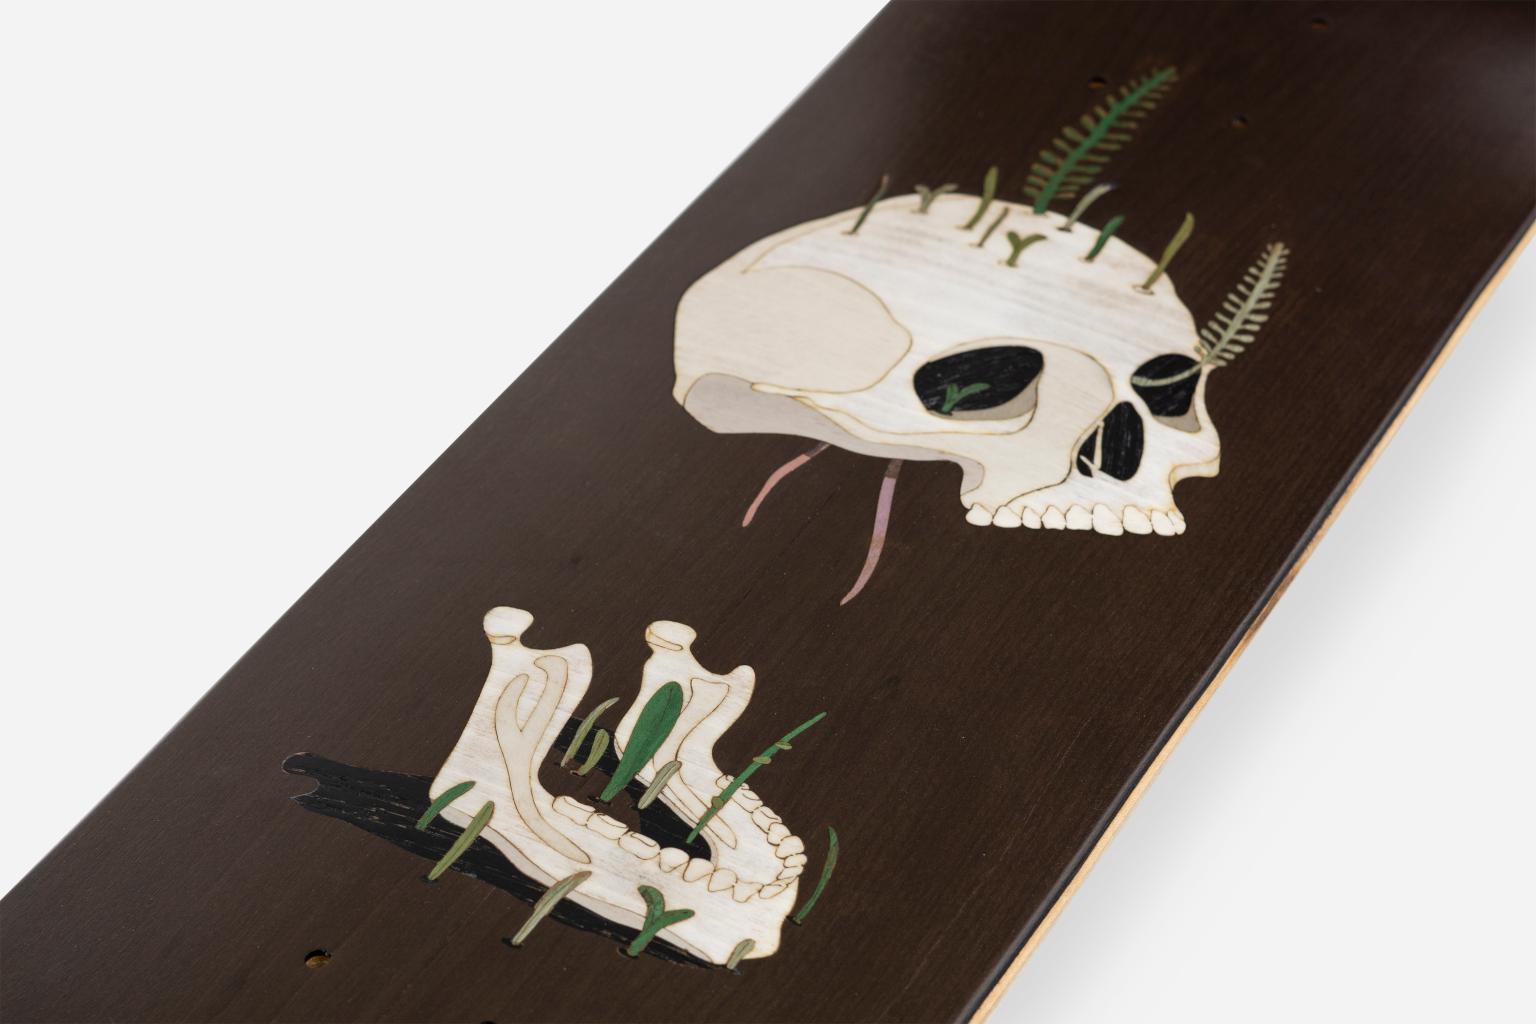 Altes Totenkopfbrett 
Old Skull Board/ Life After Life Board ist ein dekoratives Skateboard-Tischchen,
erhältlich in verschiedenen Farbvarianten und mit einem eingefügten Bild, das die Kontinuität simuliert
della vita dopo la morte.
Das Old